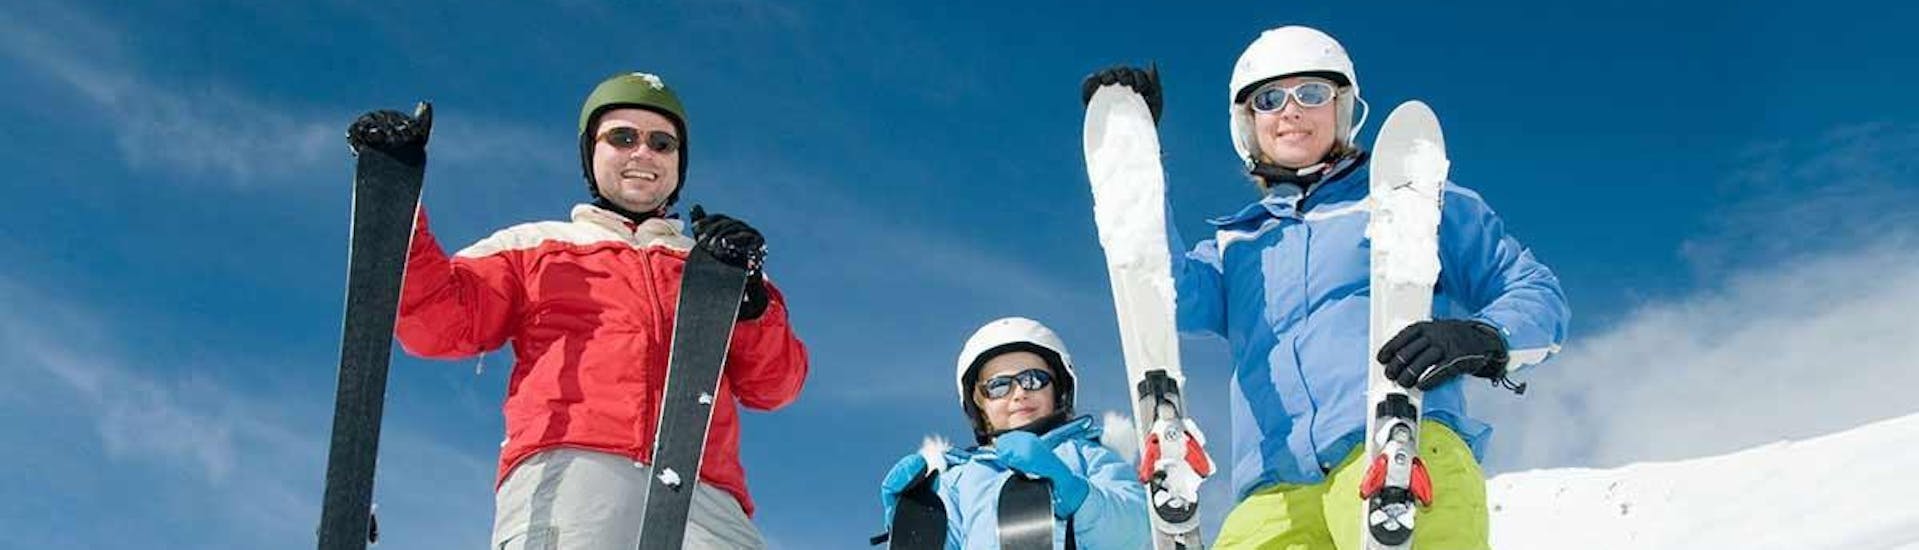 Los instructores de la escuela de esquí Snow&Go posan para una foto de grupo en la nieve y sonríen a la cámara.